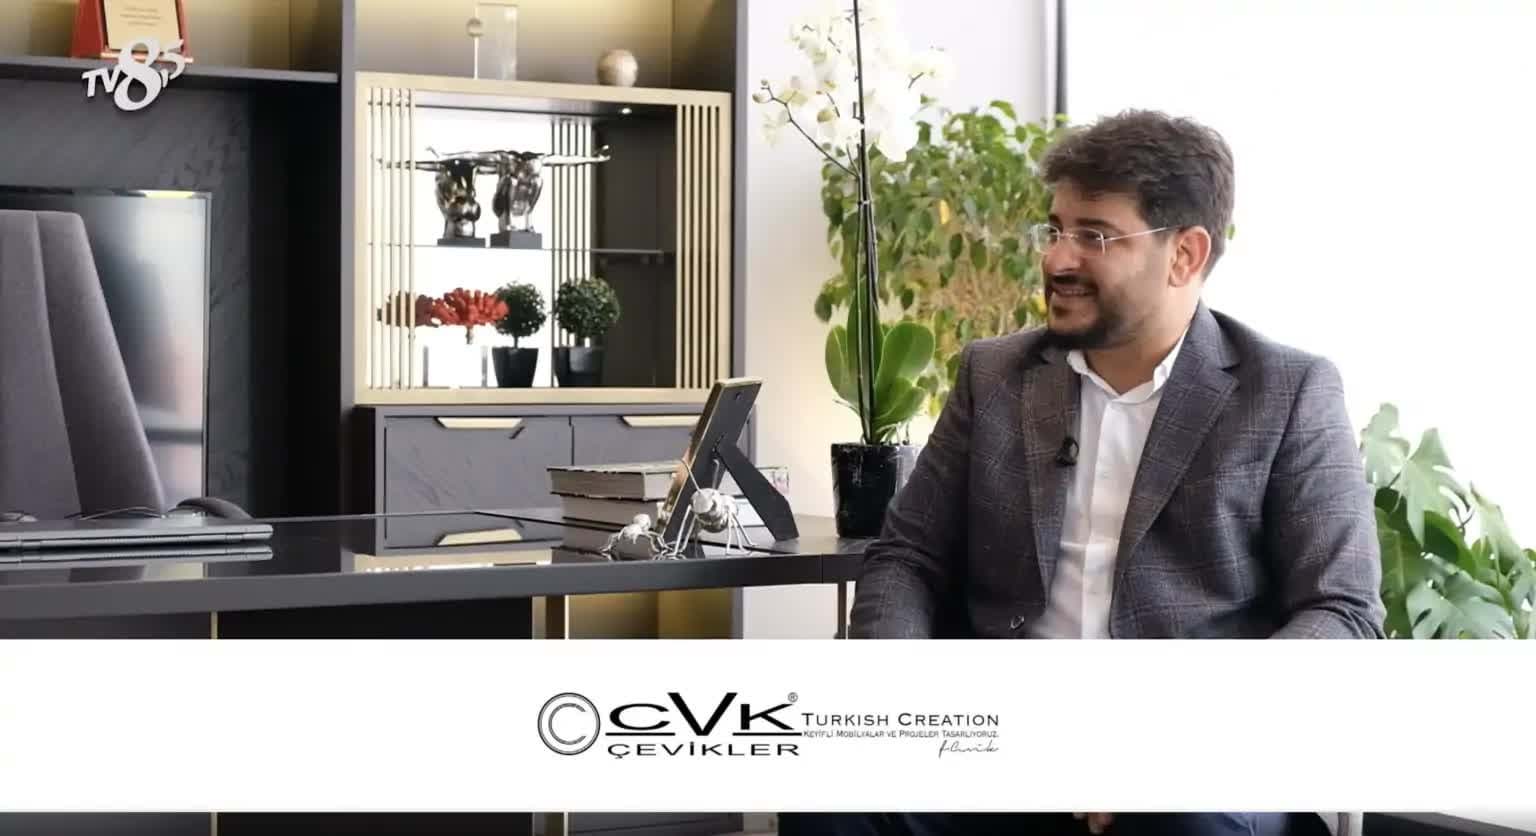 CVK MOBİLYA TV8,5 BUSİNESS TİME PROGRAMINDA 